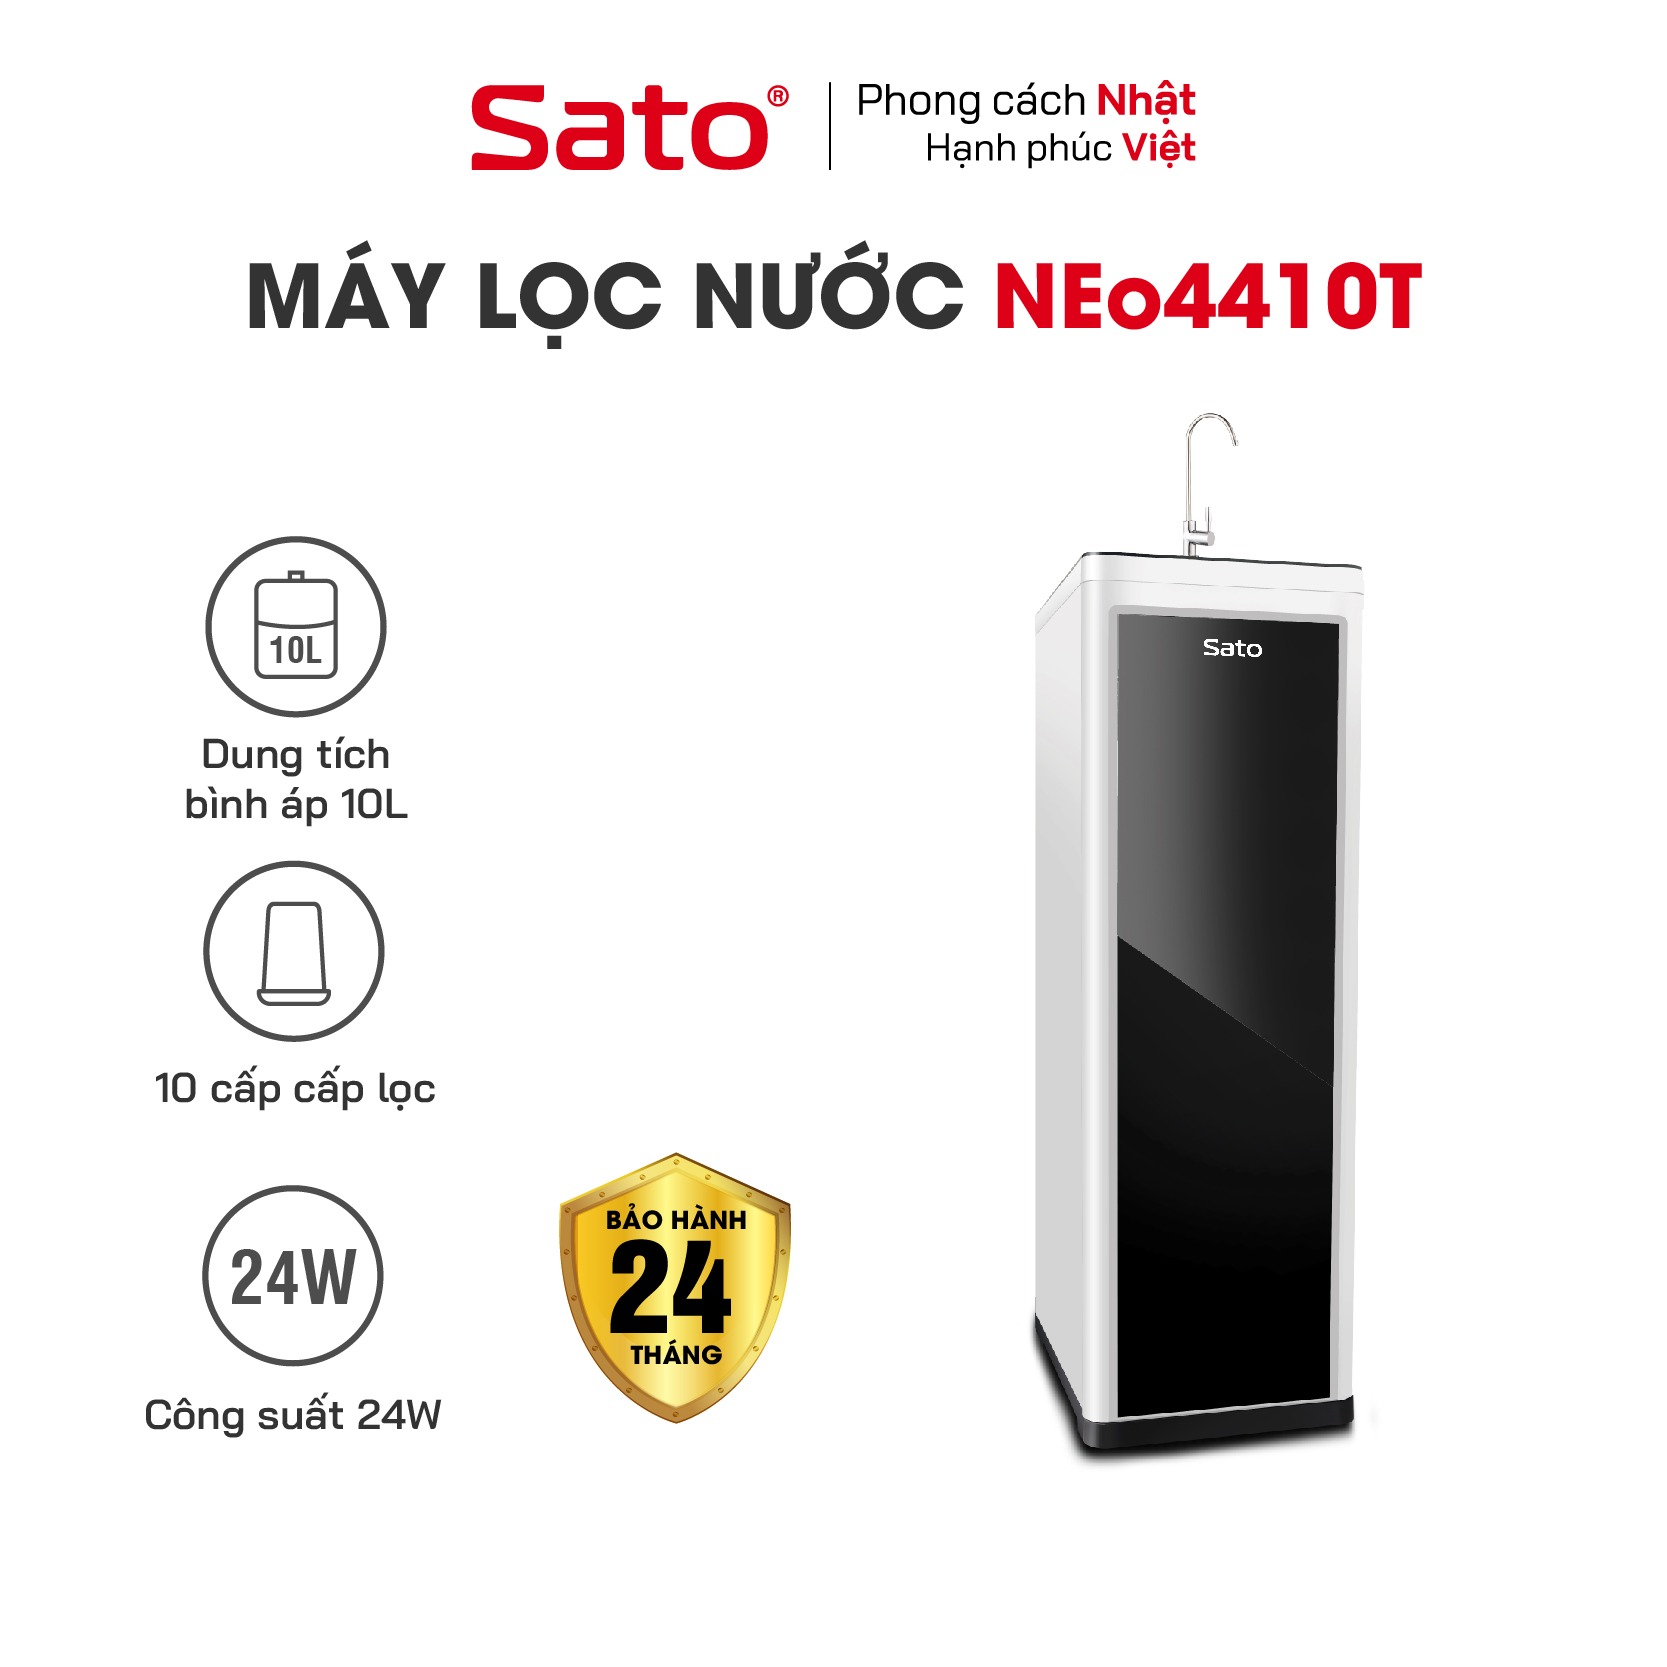 Máy lọc nước Sato Neo1 NEo4410T 10 cấp lọc - Hệ thống 10 lõi lọc vượt trội, lọc sạch, bổ sung khoáng chất - Miễn phí vận chuyển toàn quốc - Hàng chính hãng